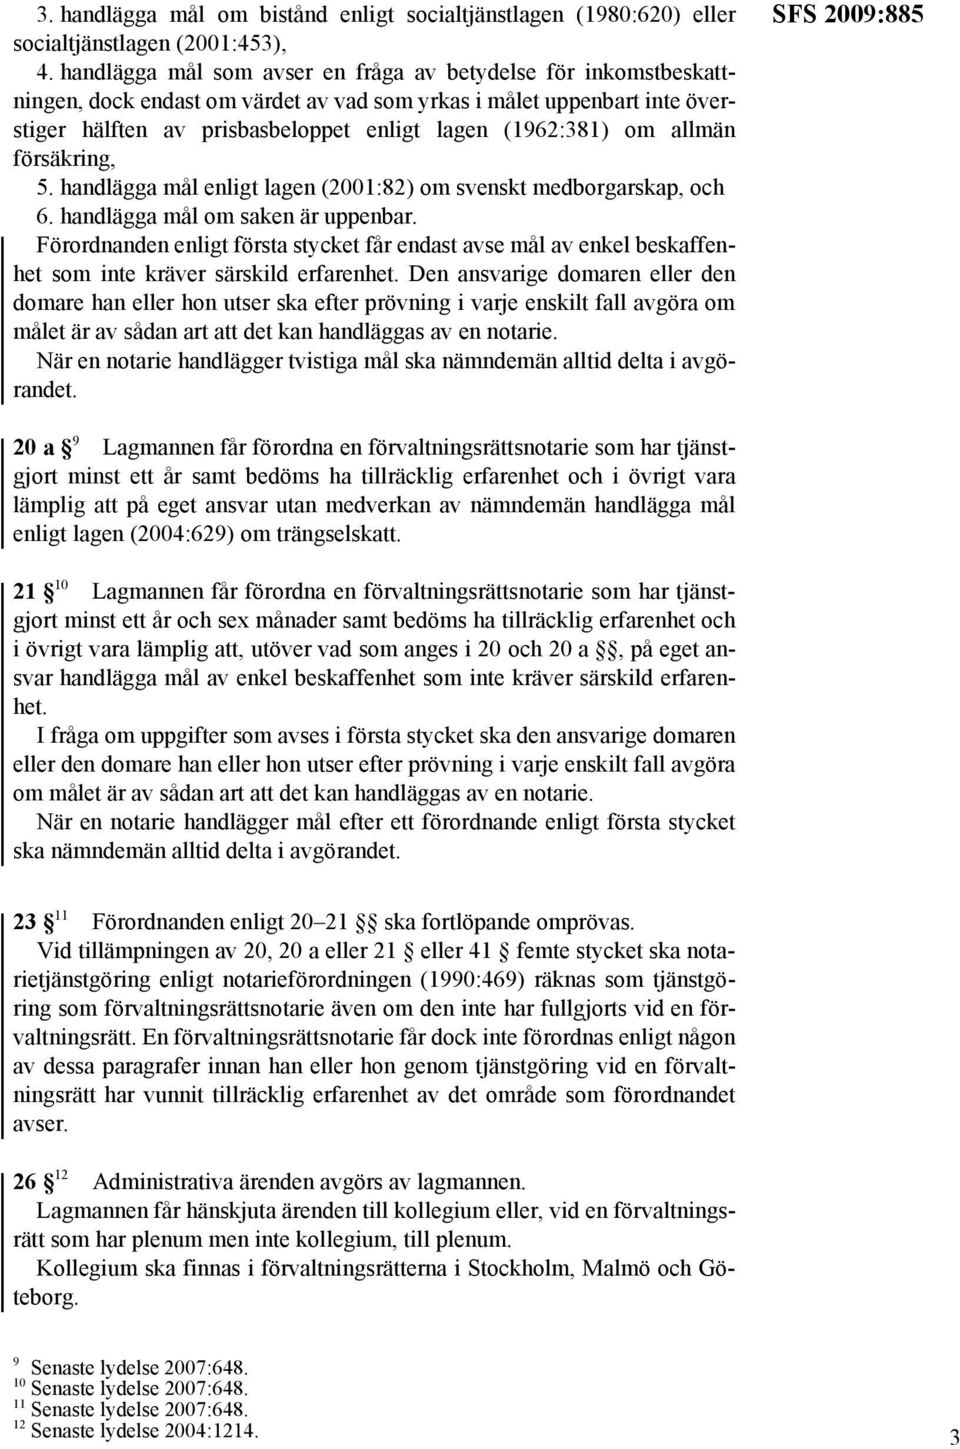 allmän försäkring, 5. handlägga mål enligt lagen (2001:82) om svenskt medborgarskap, och 6. handlägga mål om saken är uppenbar.